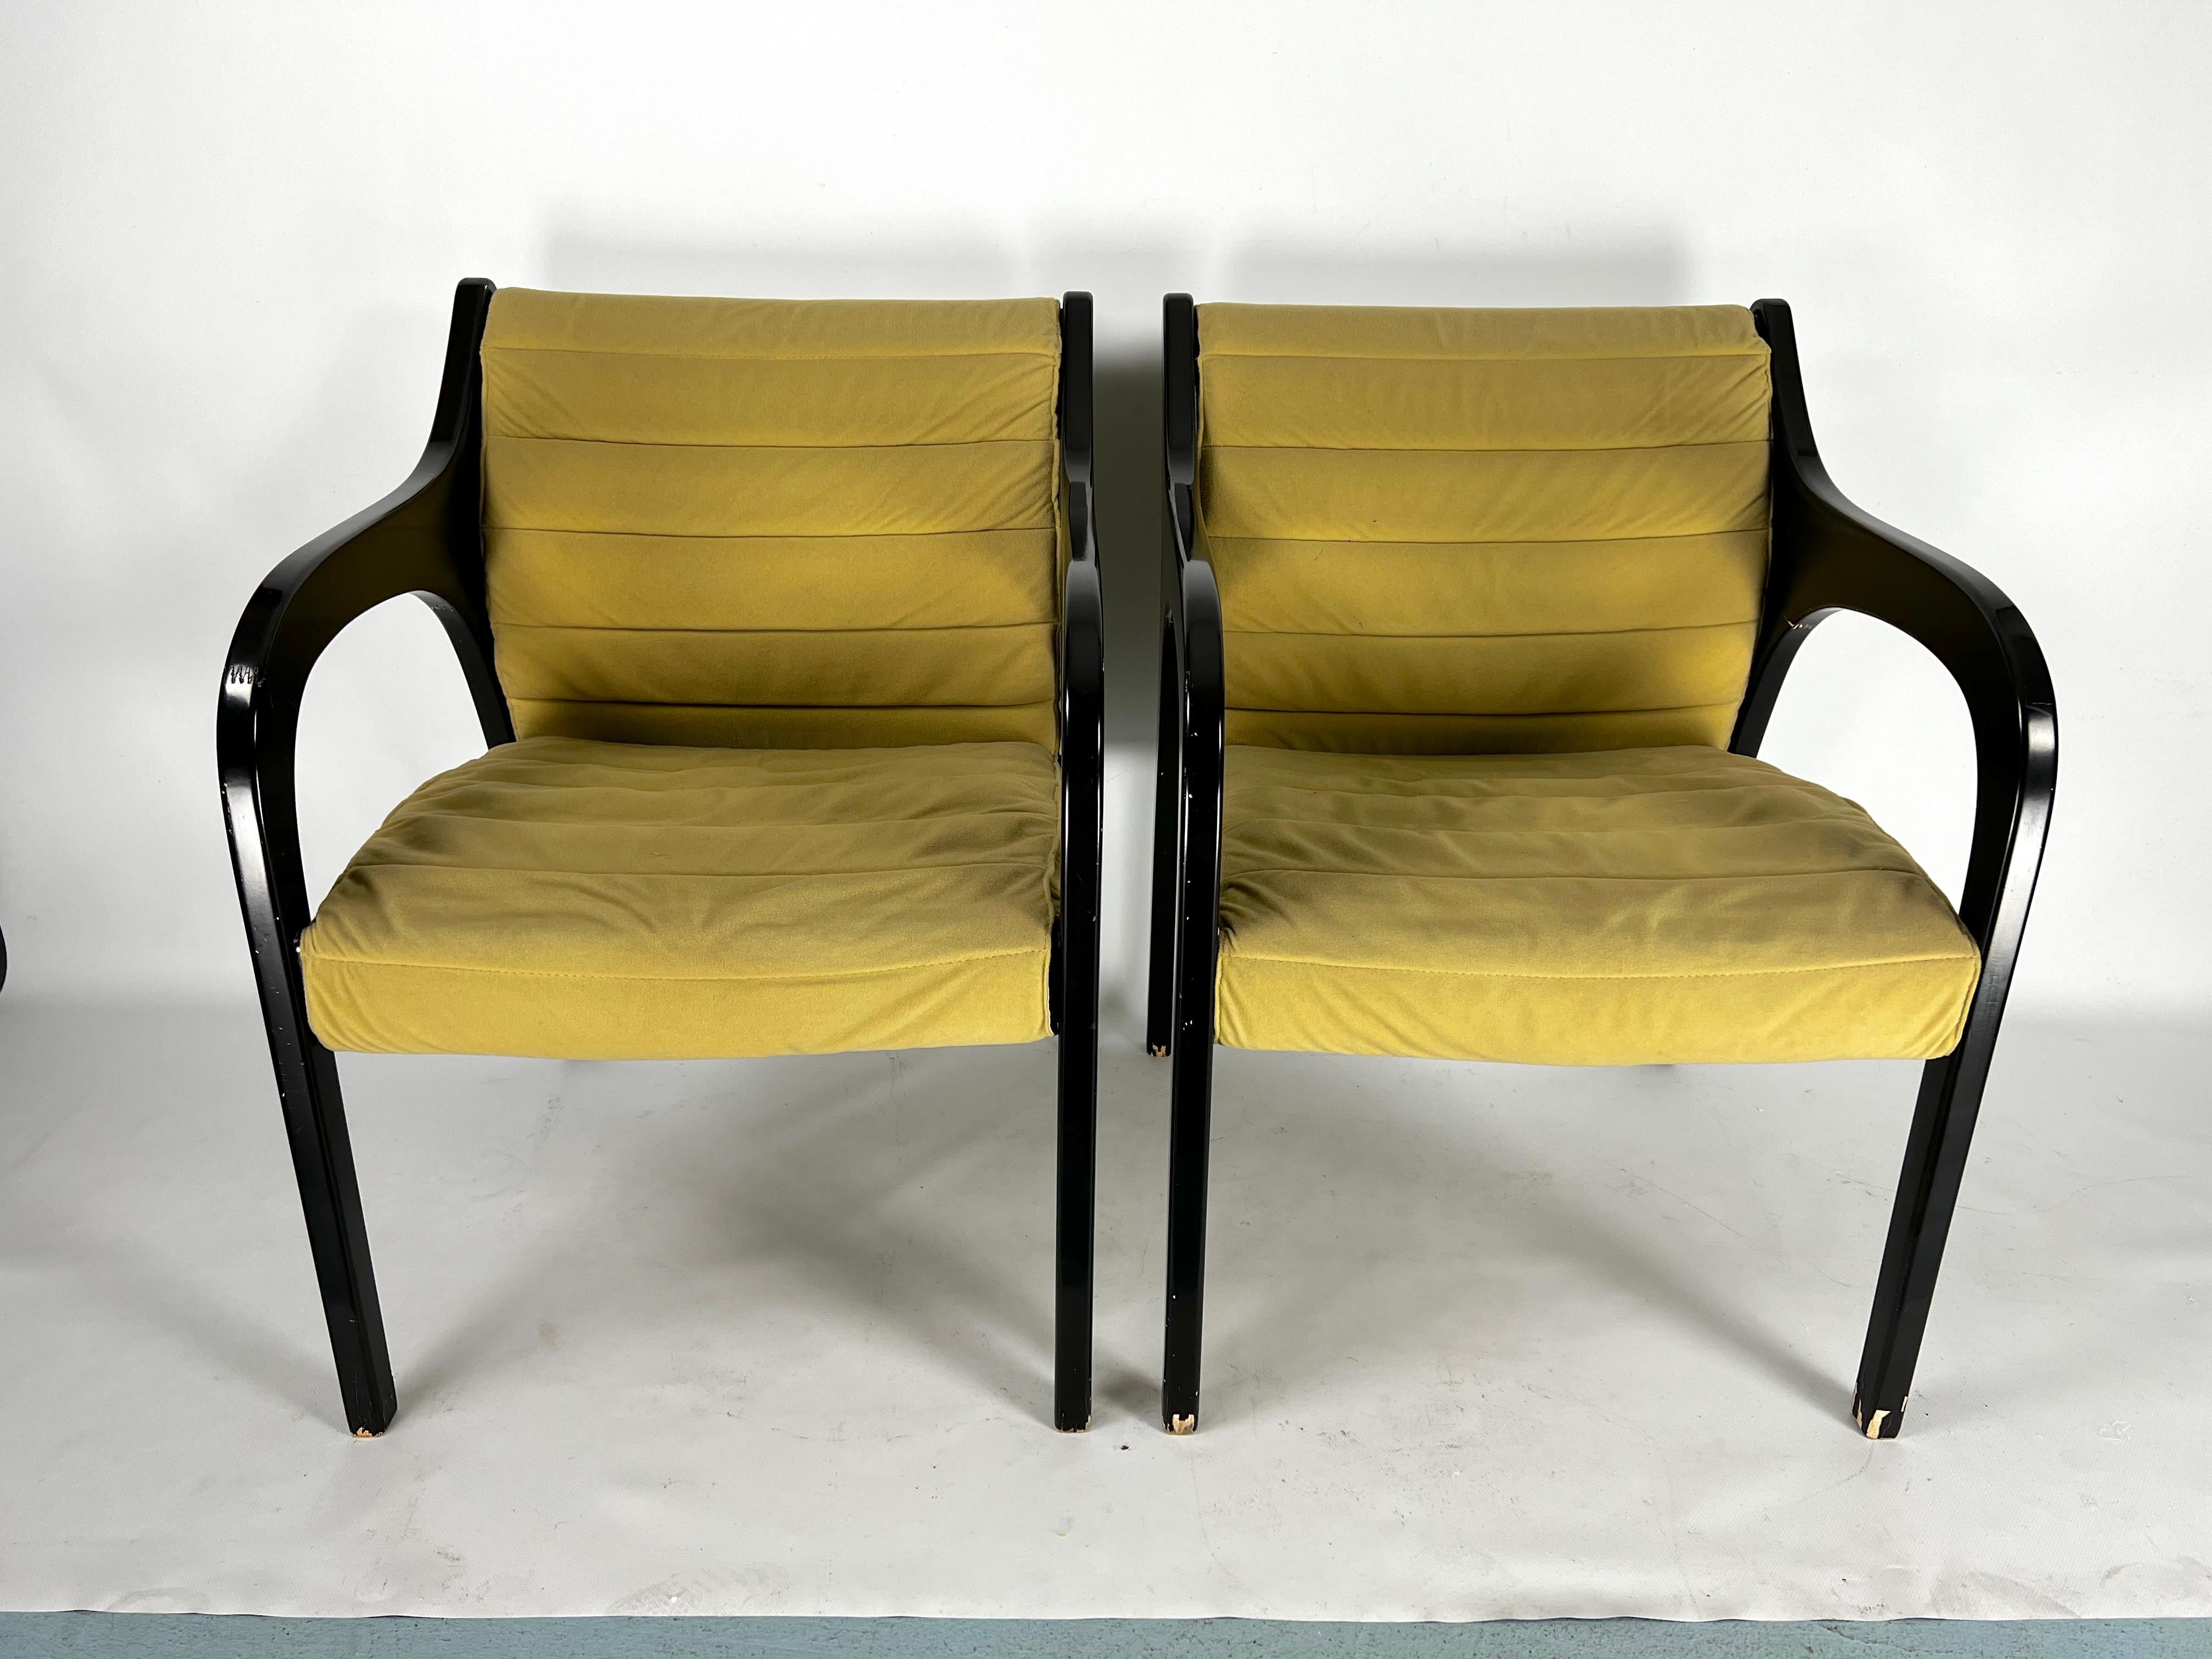 Paire de chaises longues conçues par Claudio Salocchi pour Sormani et produites en Italie dans les années 60.
Bon état vintage avec des traces normales d'âge et d'utilisation. Quelques petits manques de laque, tissu d'origine sans défauts apparents.